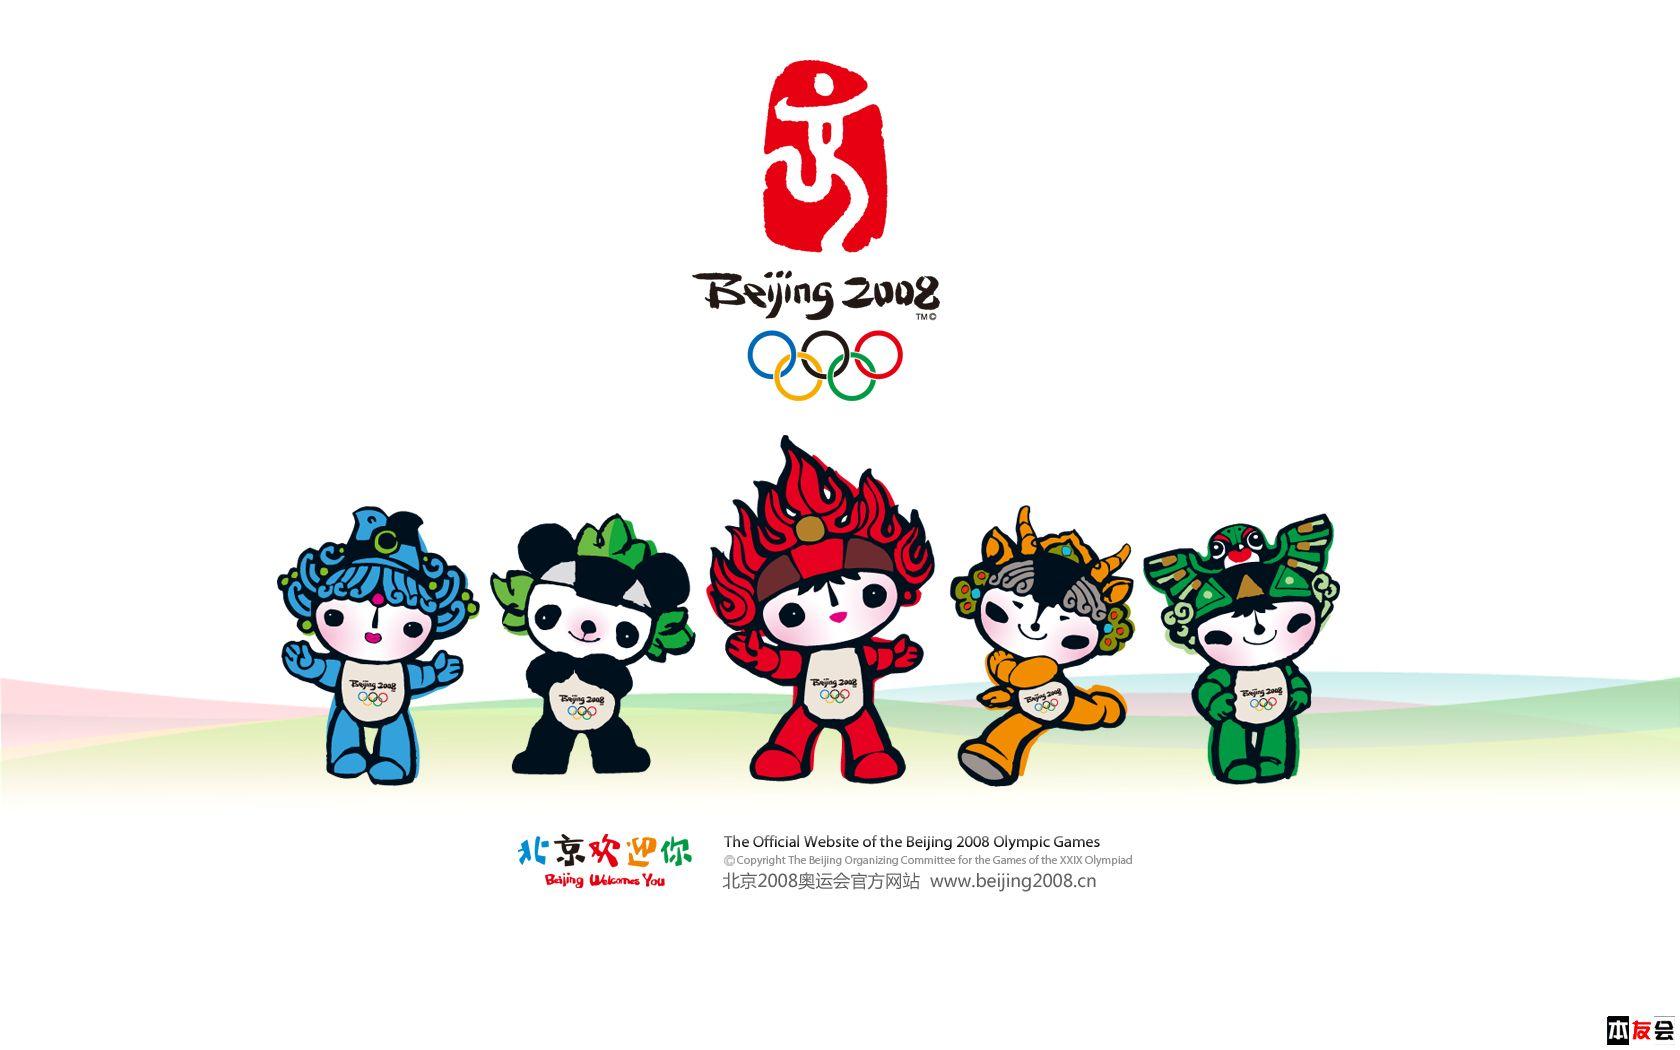 再看08北京奥运依旧热血沸腾是怎么回事关于北京2008奥运会的新消息